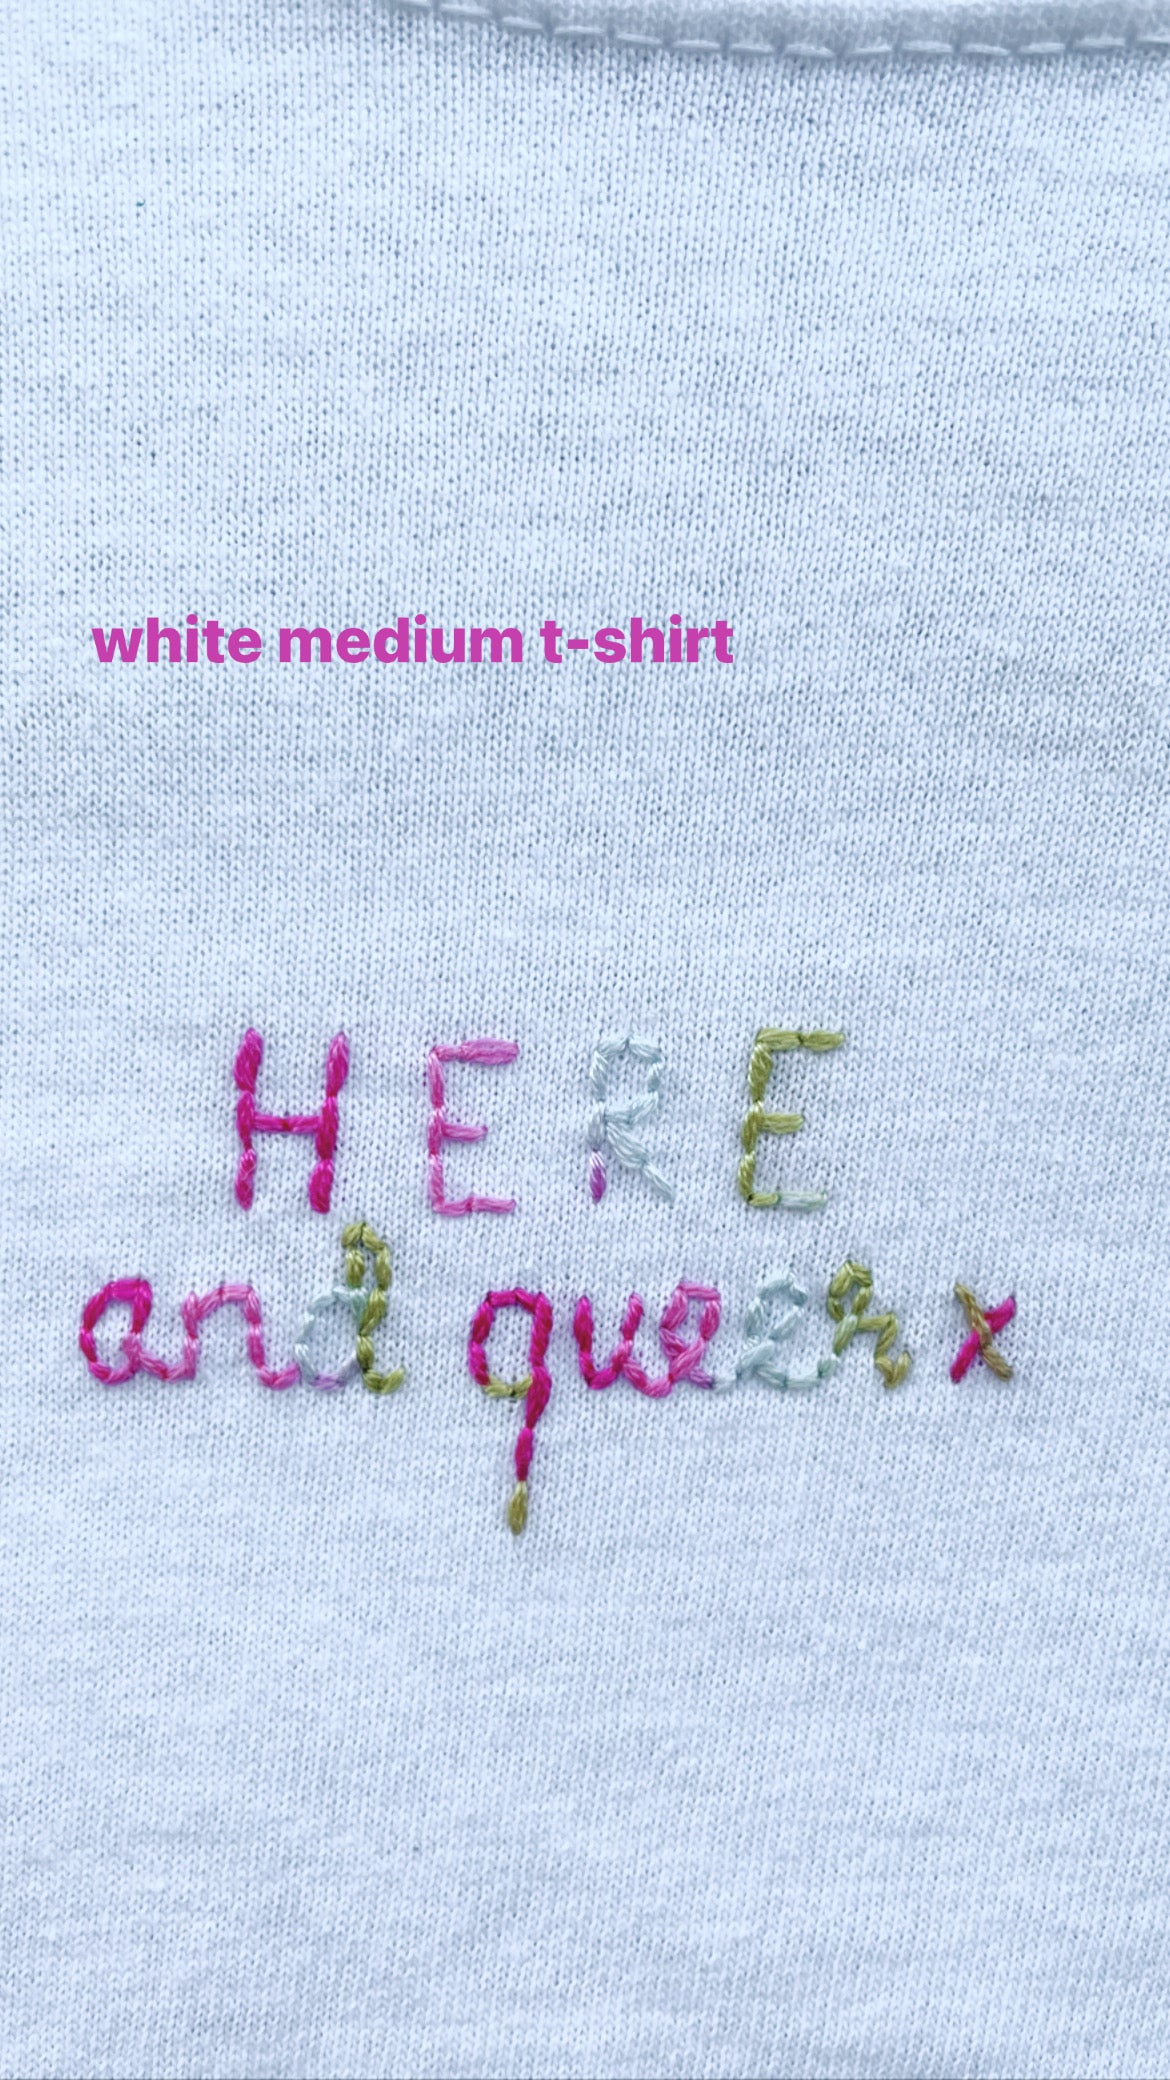 HERE & QUEER - WHITE MEDIUM